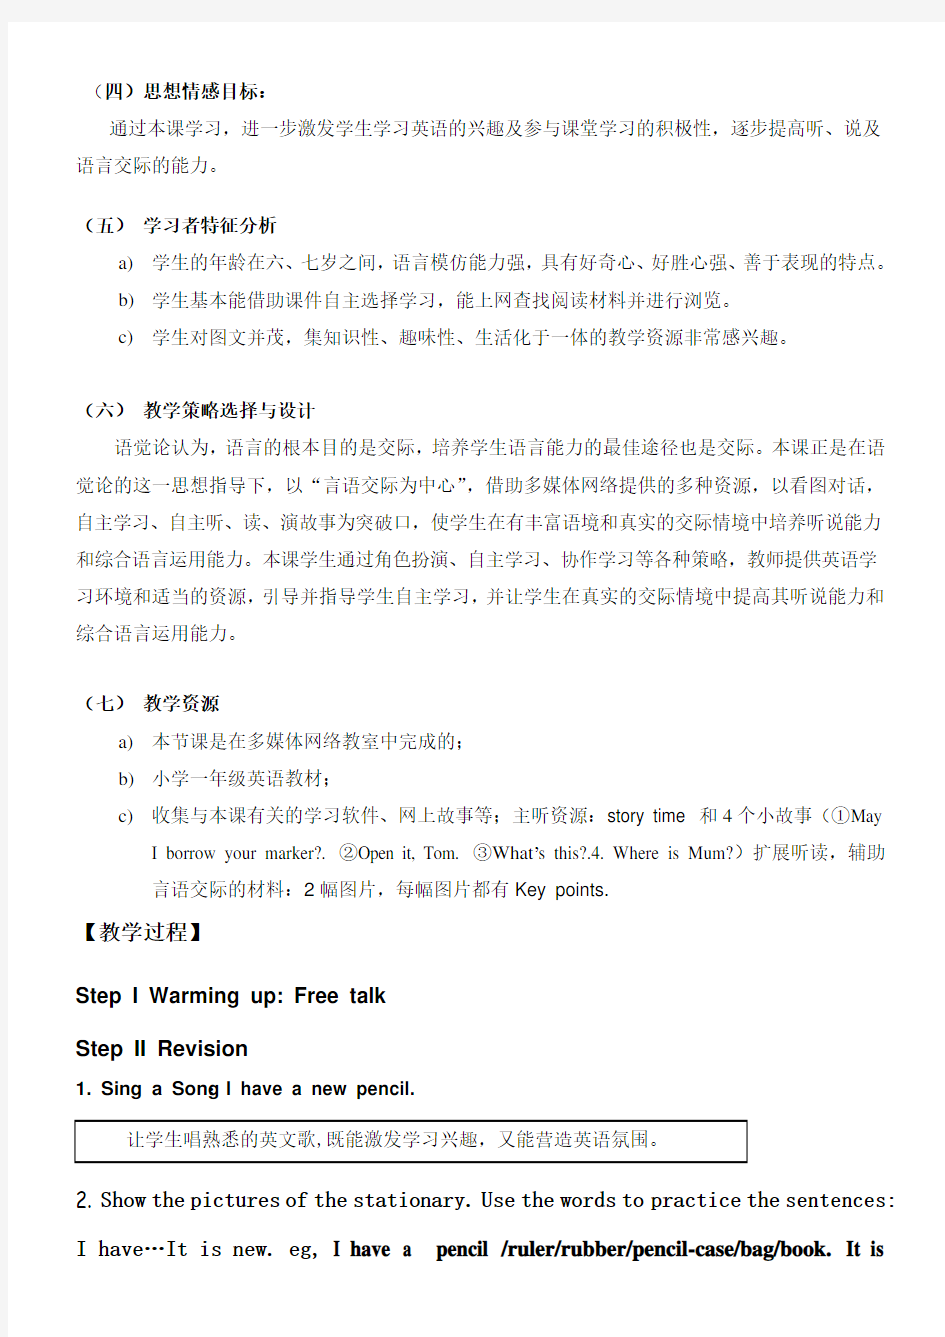 广州市九年义务教育六年制小学试验教材《英语口语》第一册